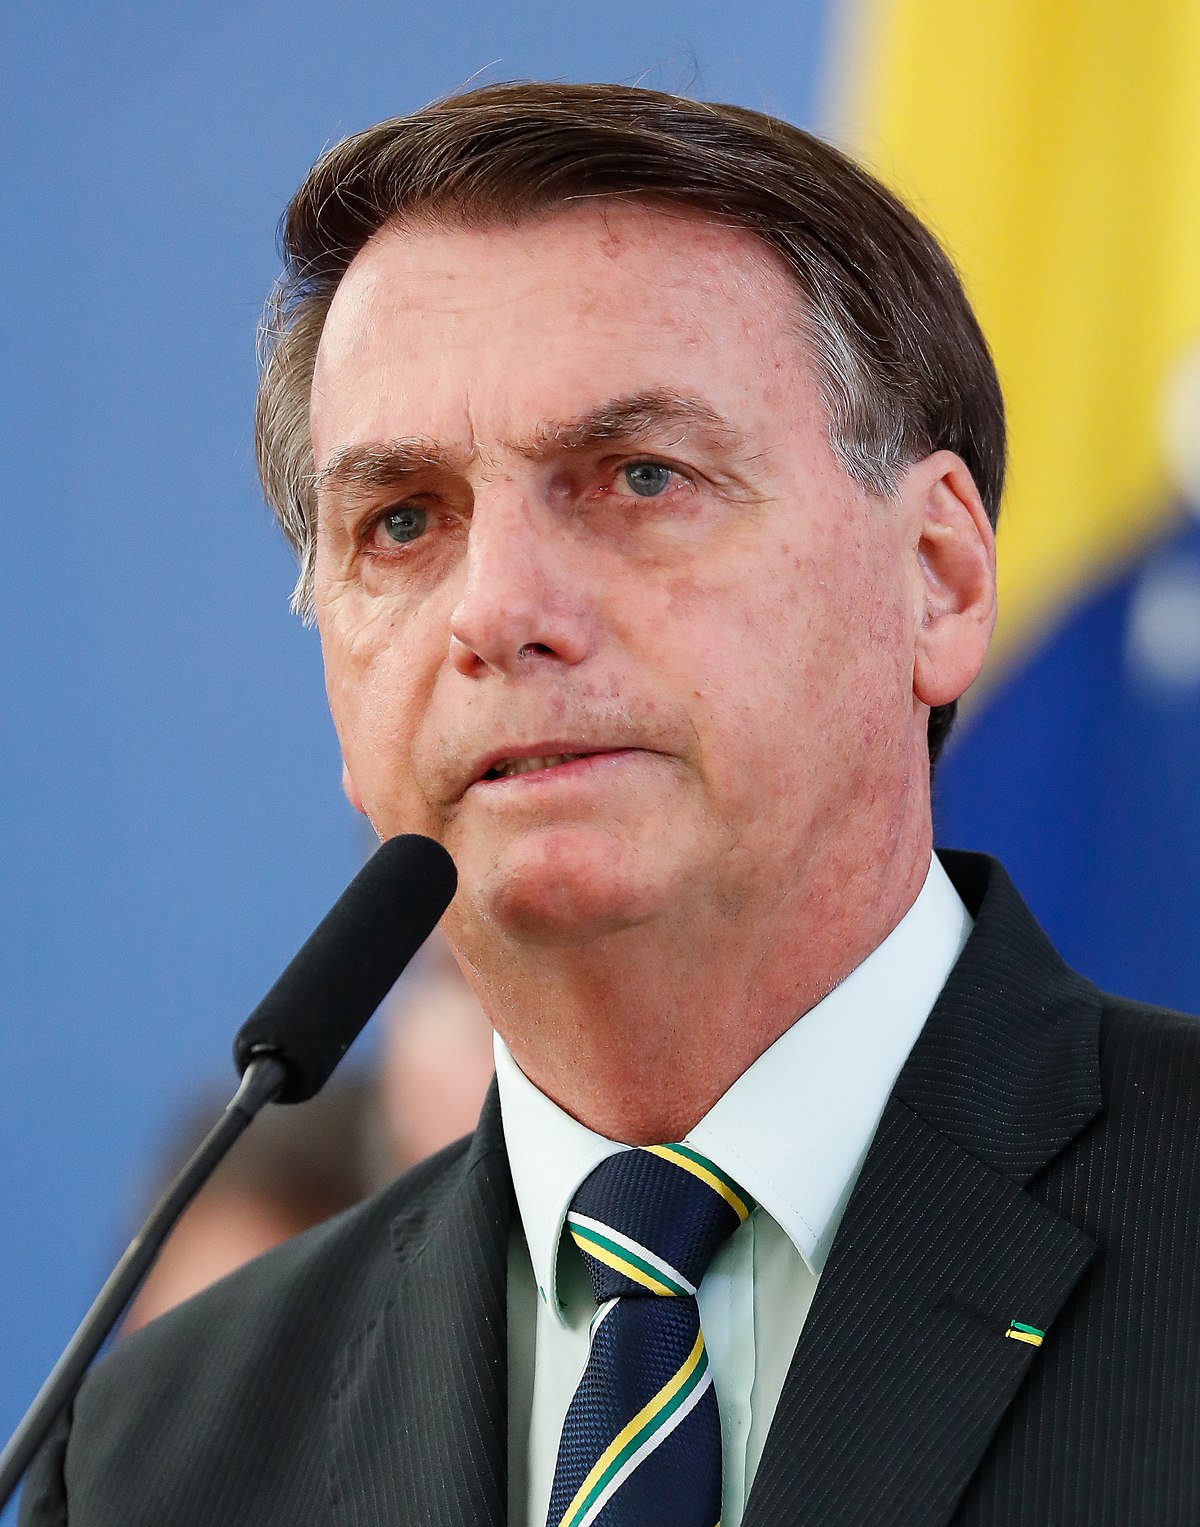 Jair Bolsonaro - Wikipedia